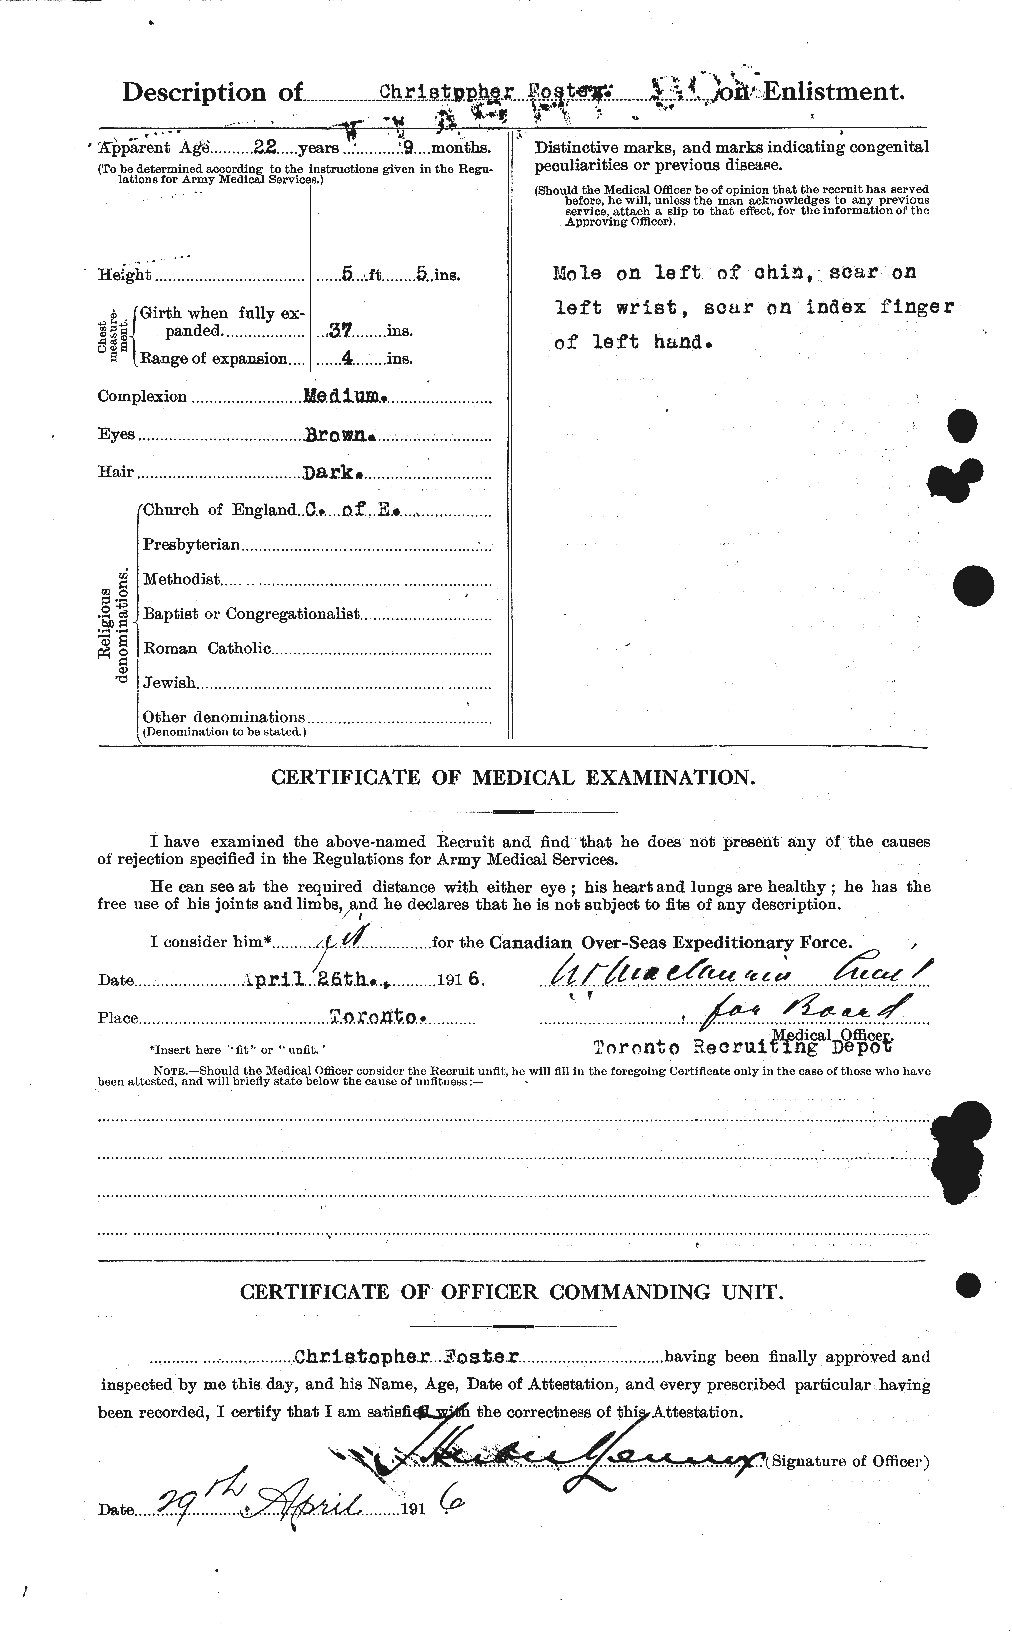 Dossiers du Personnel de la Première Guerre mondiale - CEC 330530b